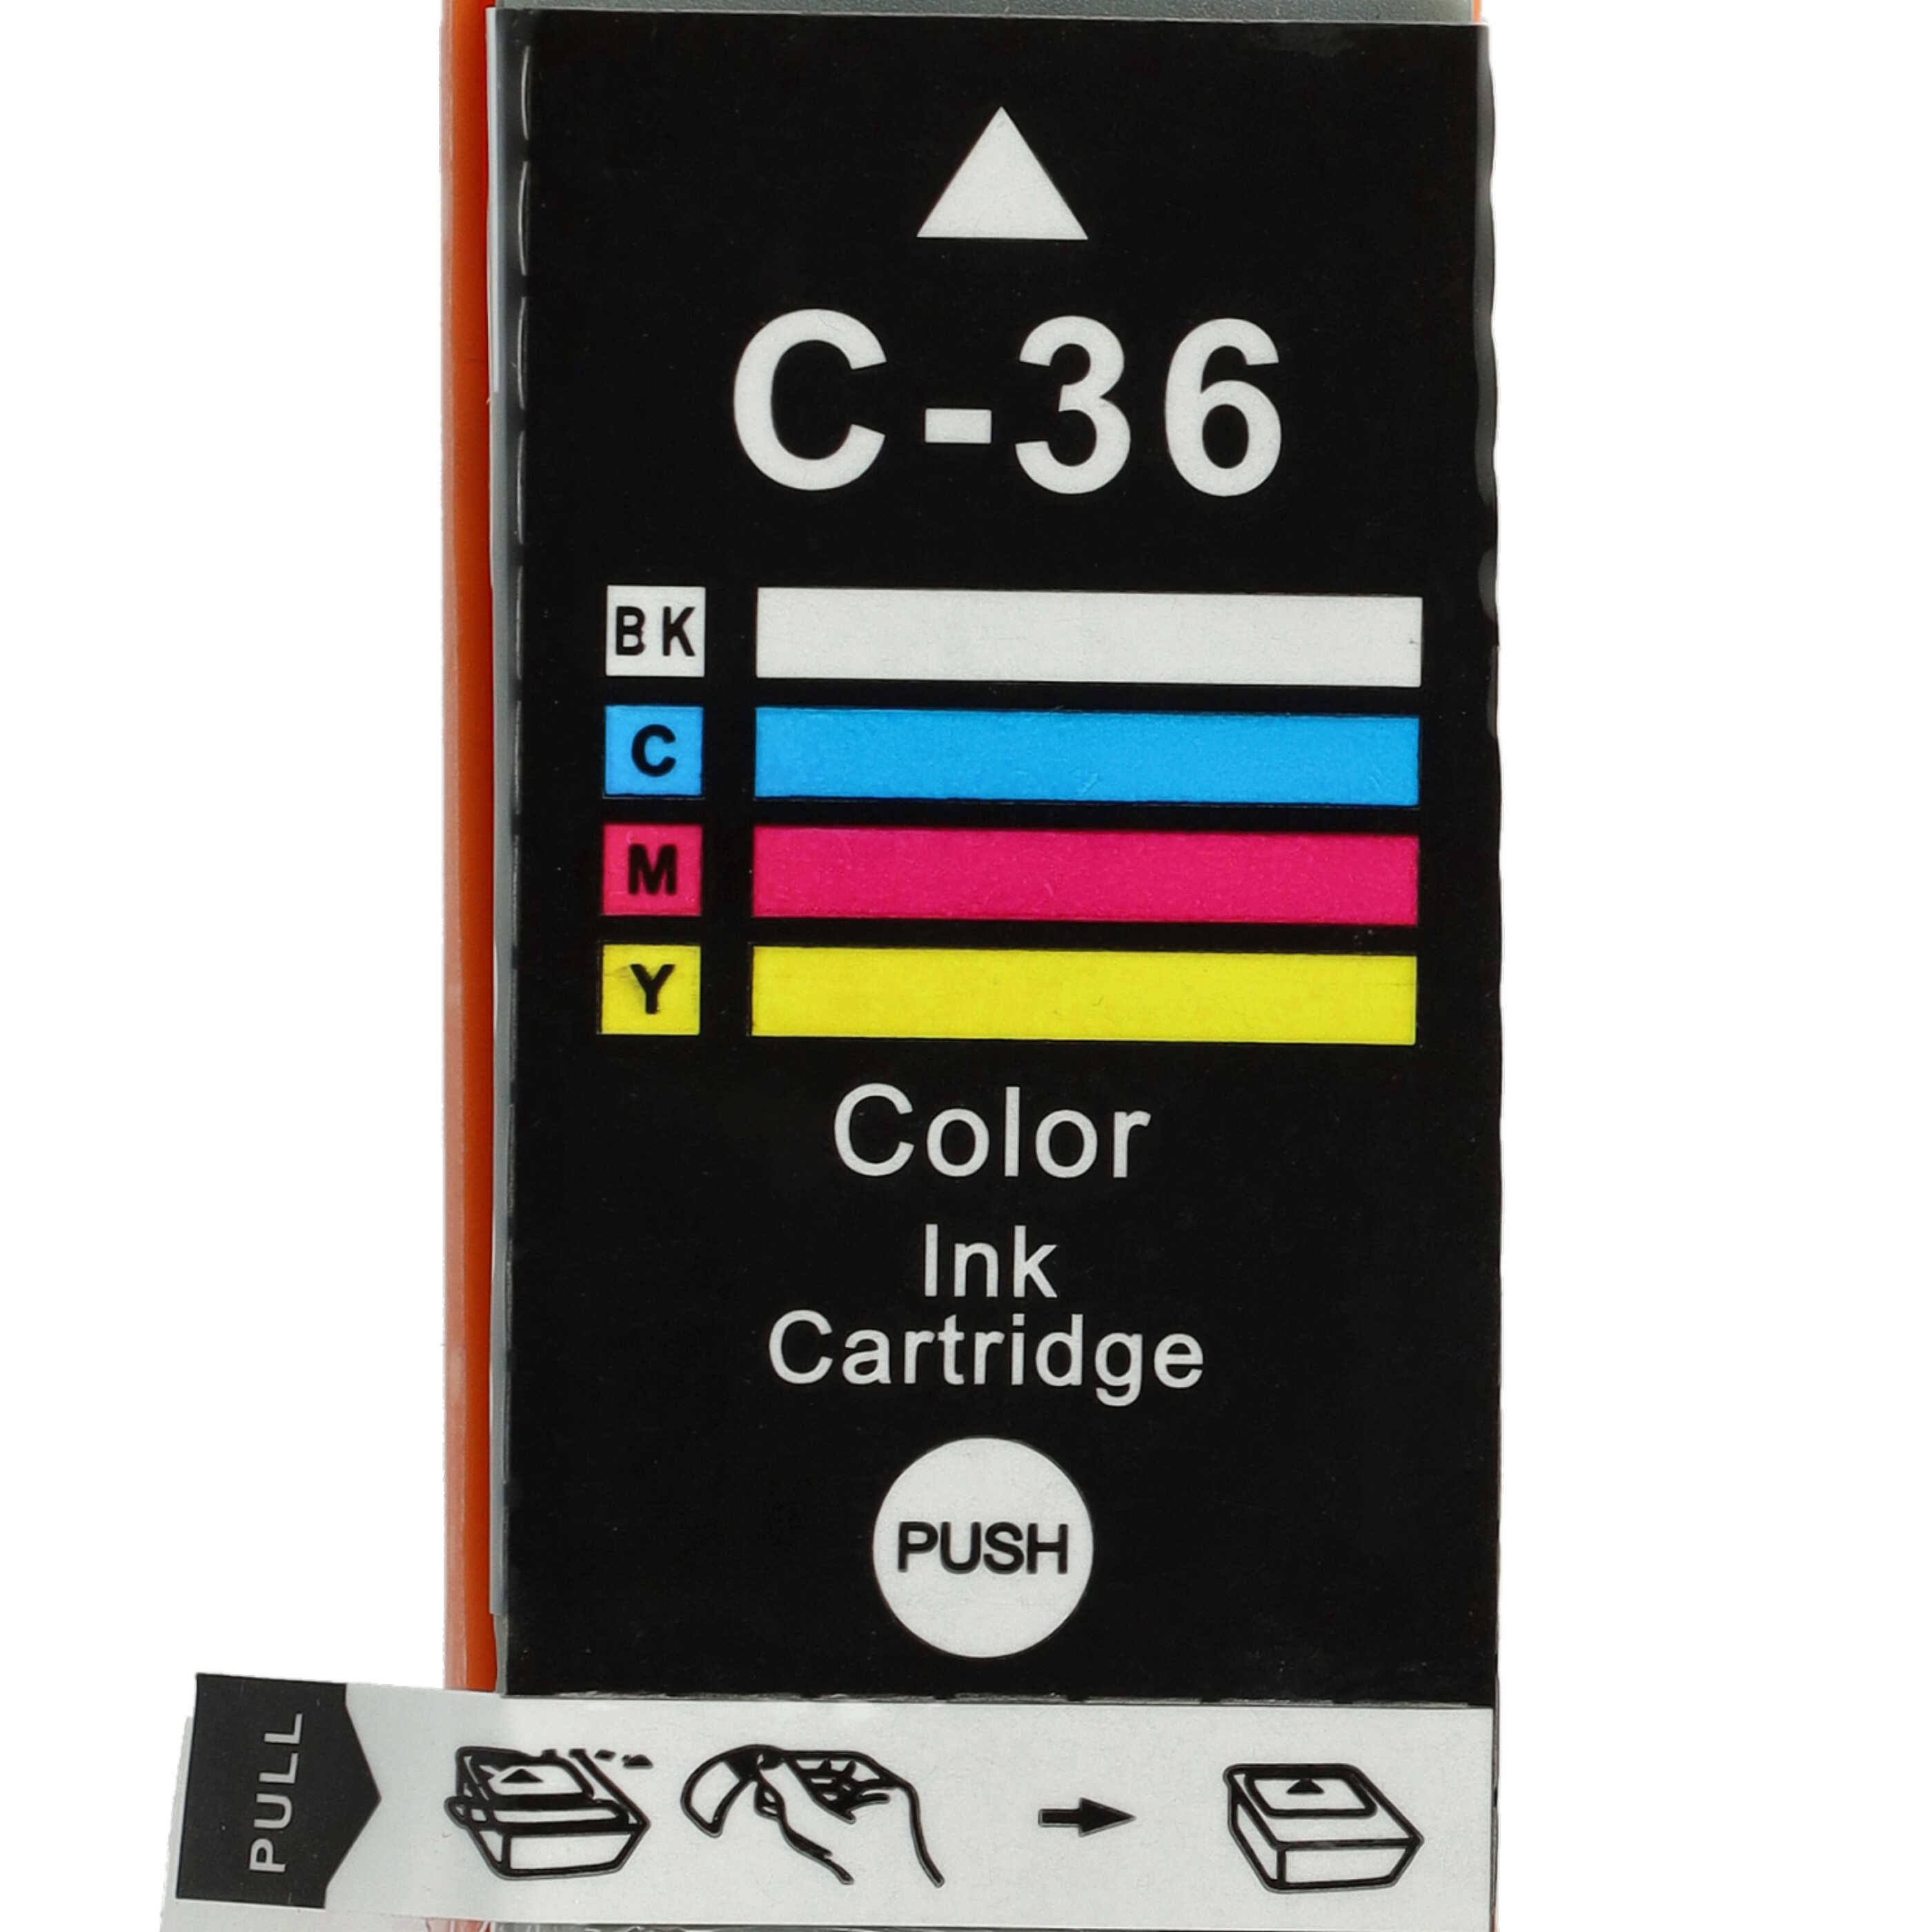 10x Ink Cartridges replaces Canon CLI-36C, CLI-36, PGI-35, PGI-35BK for IP100v Printer - B/C/M/Y